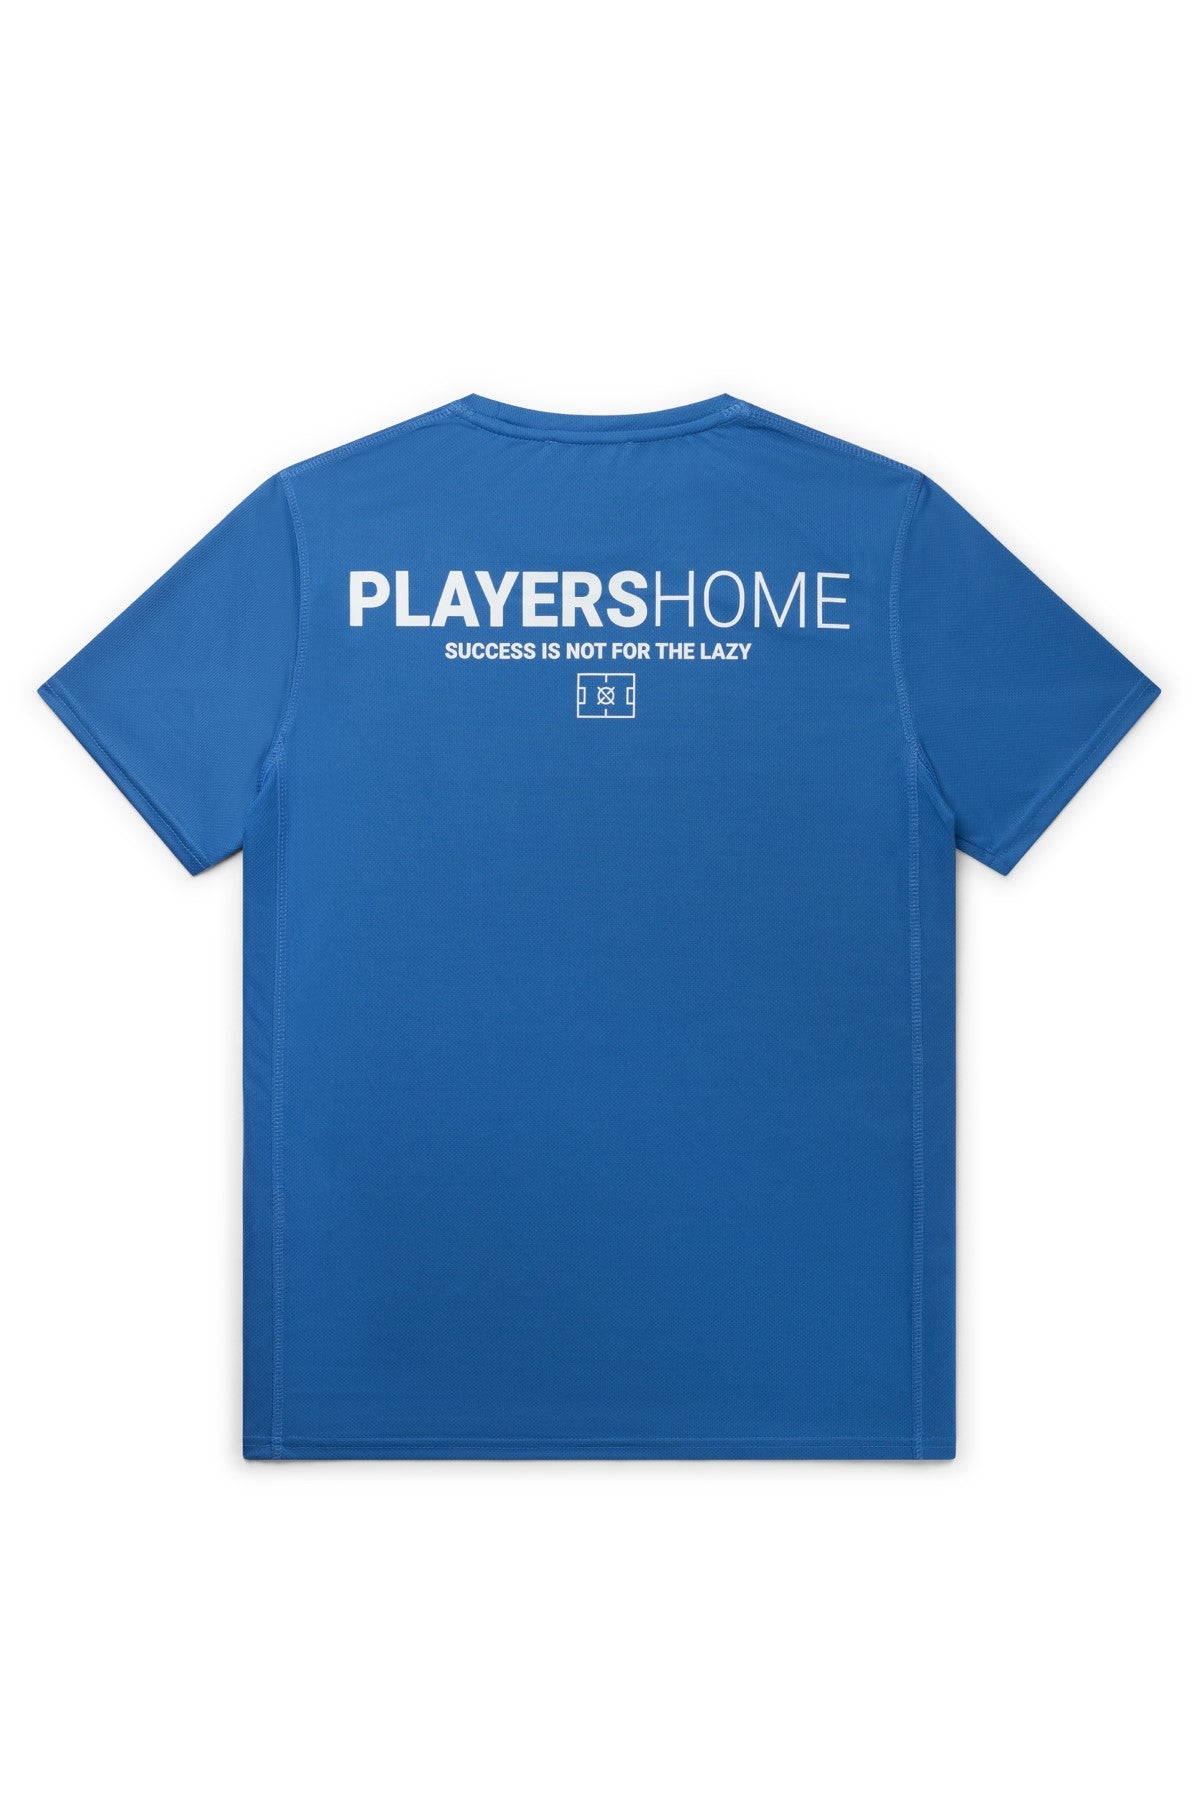 PLAYERHOME x TRUST T-Shirt - Blue